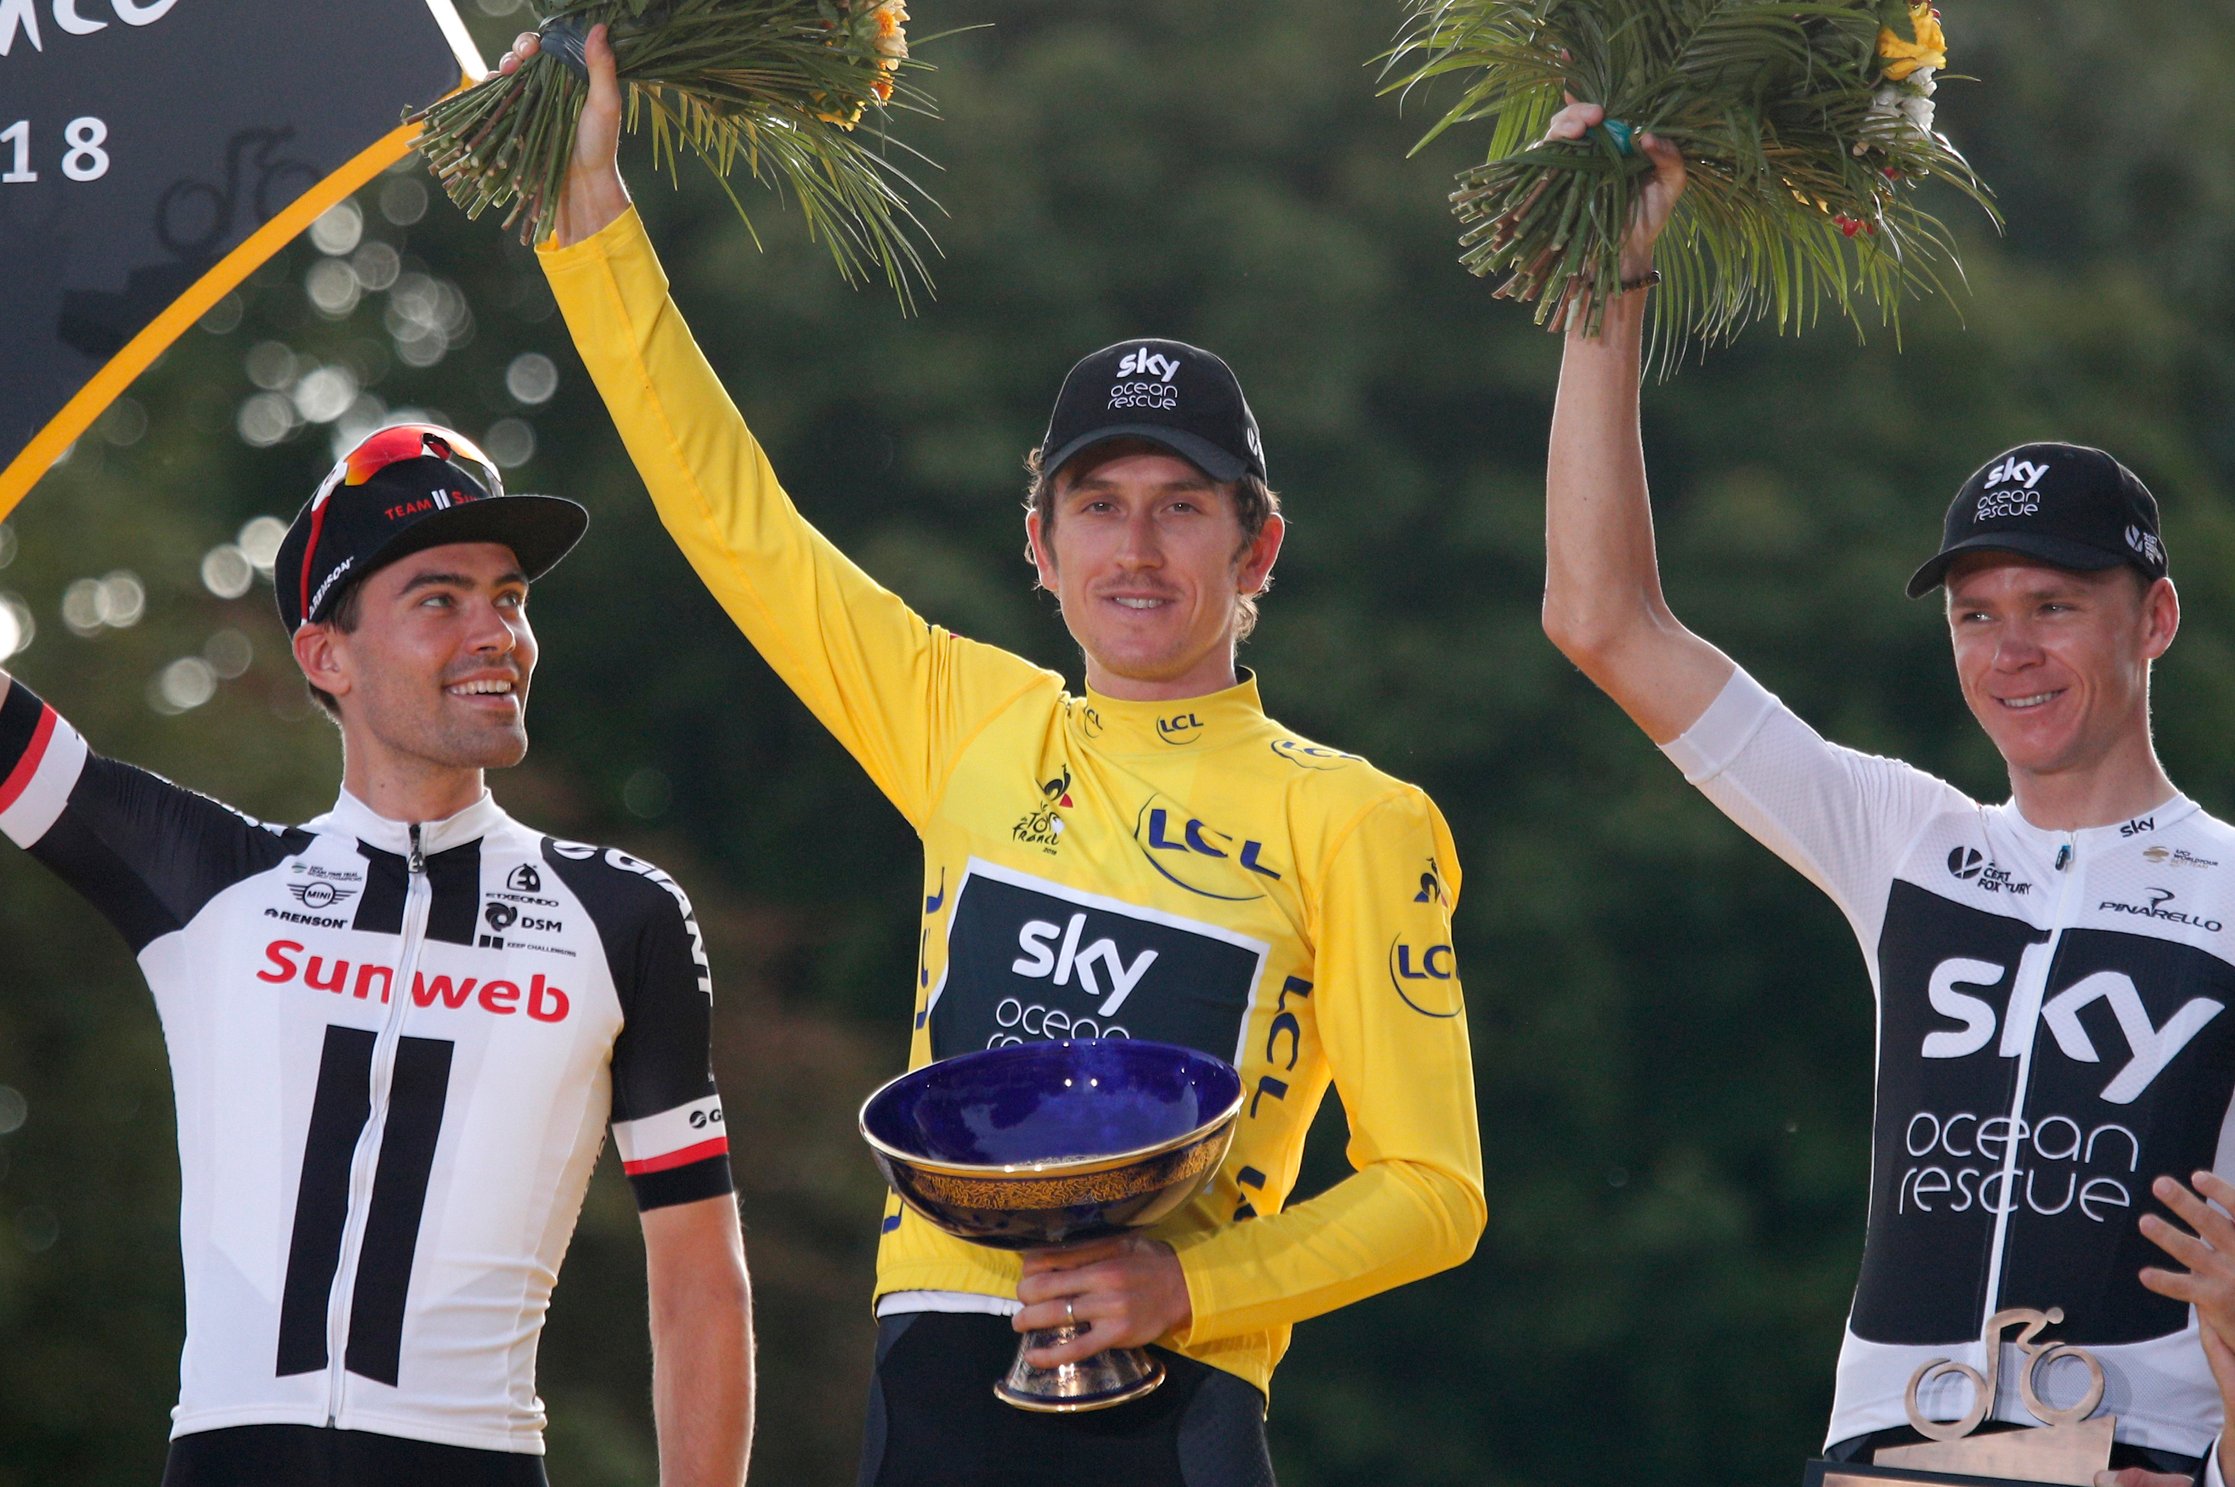 Increíble, roban el trofeo del Tour de France